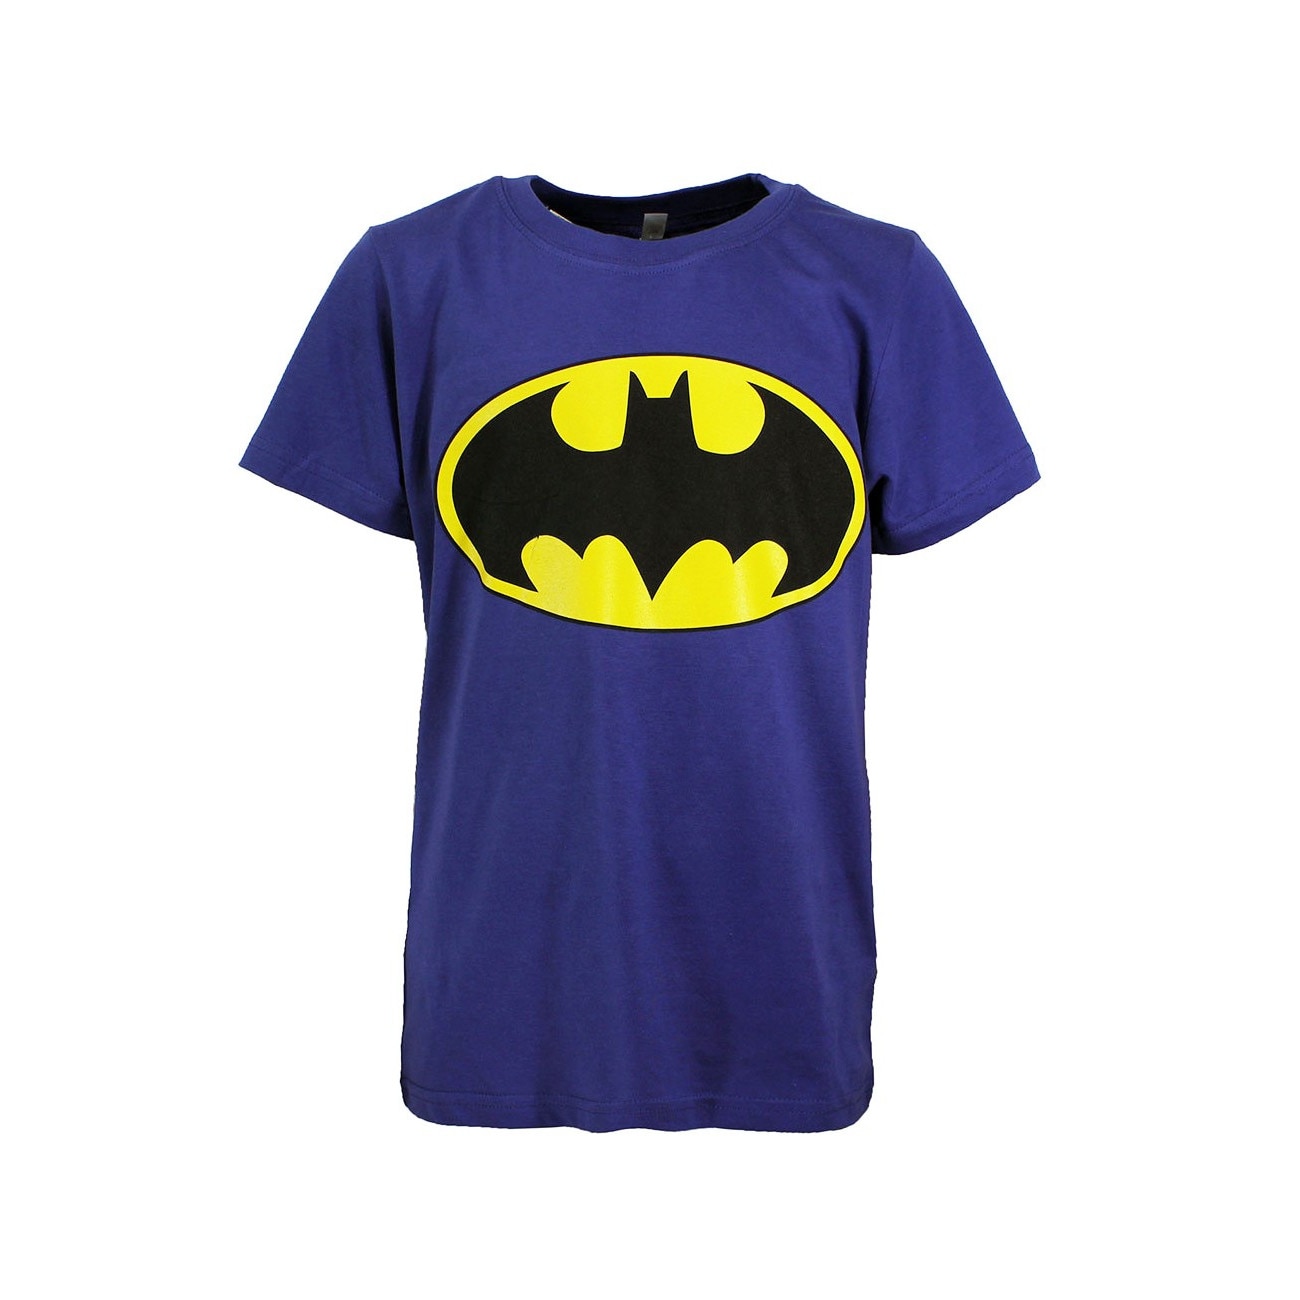 Детская футболка Бэтмэн. Детская футболка DC Comic. Футболка Batman комикс. Бэтмен футболка синяя.